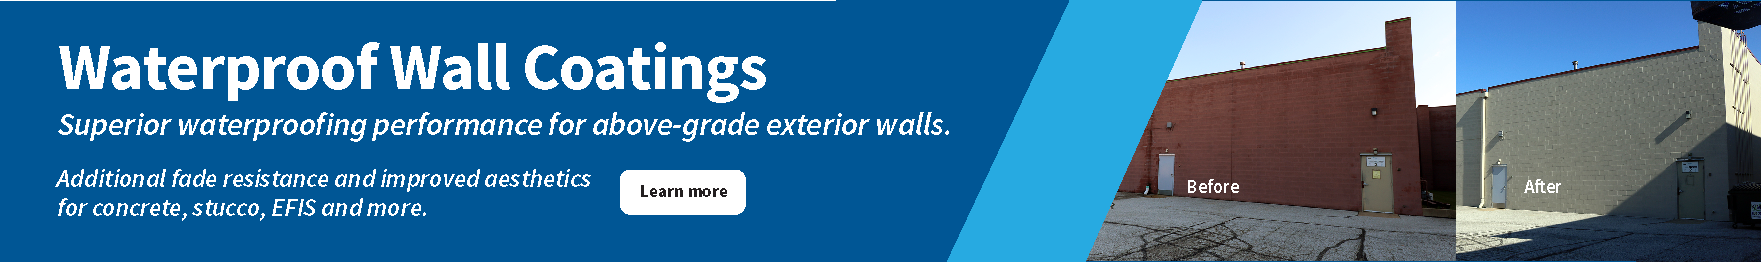 Waterproof Wall Coatings